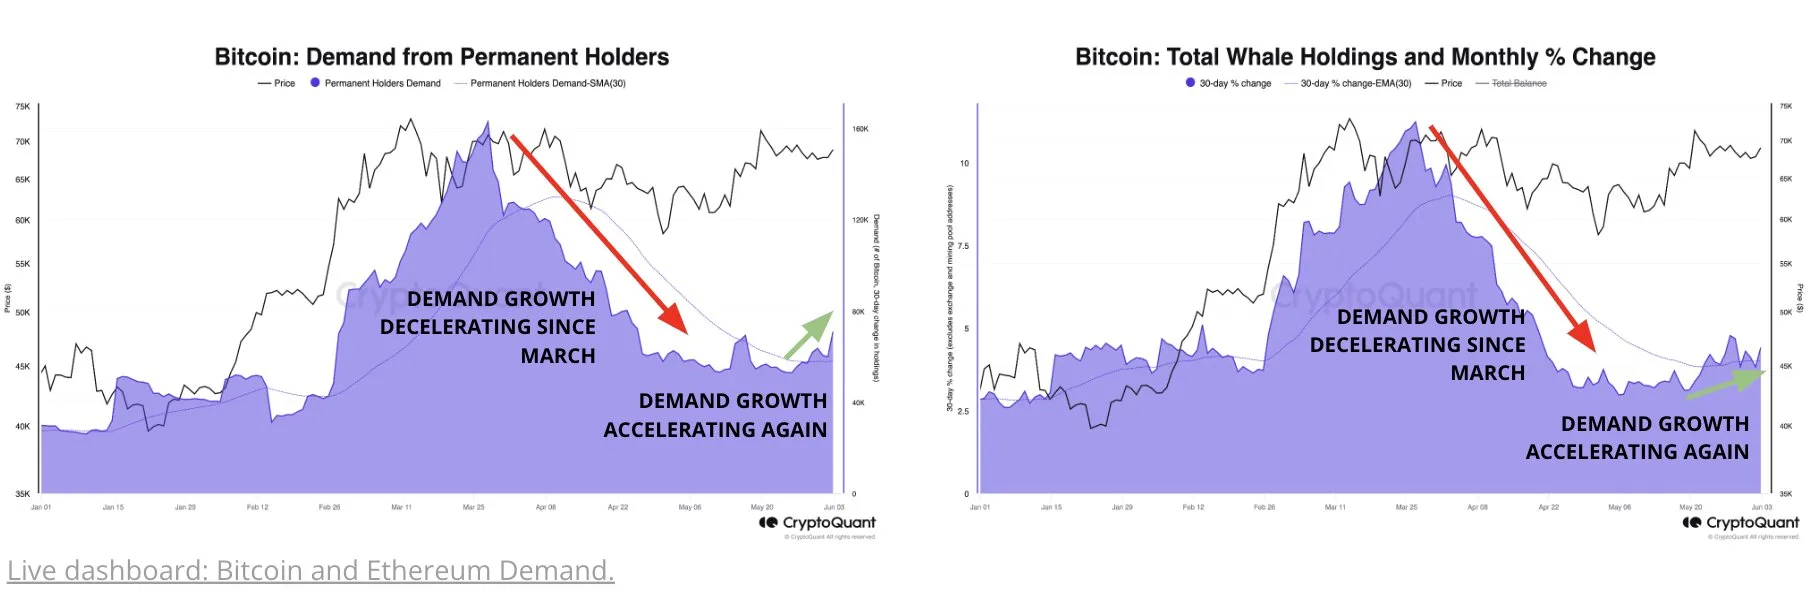 Bitcoin Demand